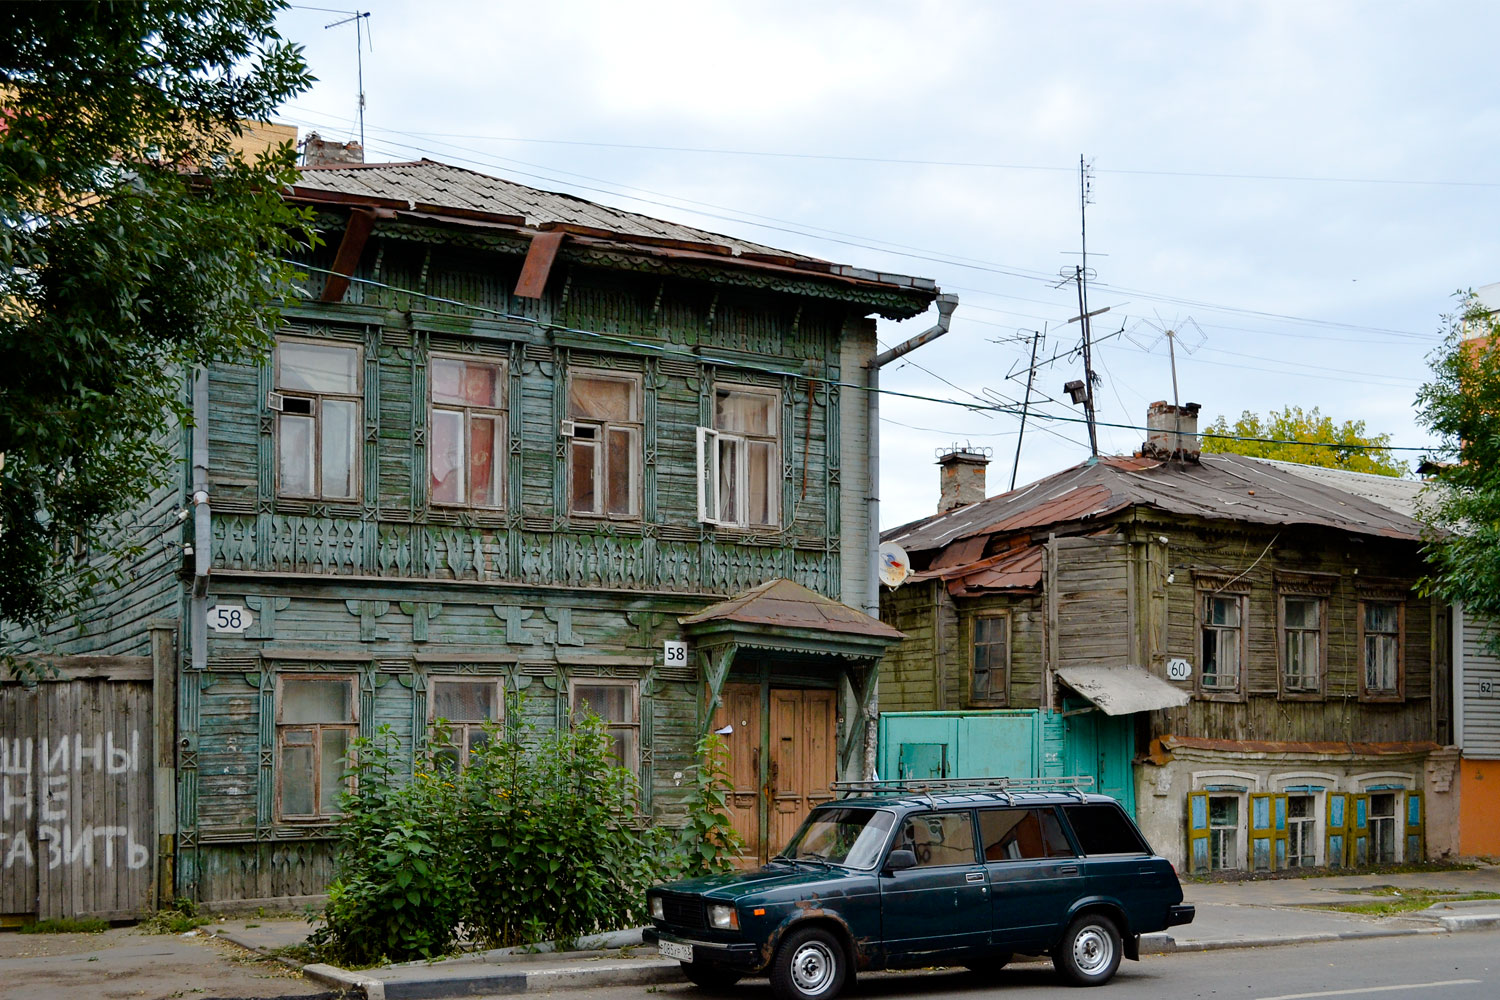 Самара, Вилоновская улица, 58; Вилоновская улица, 60